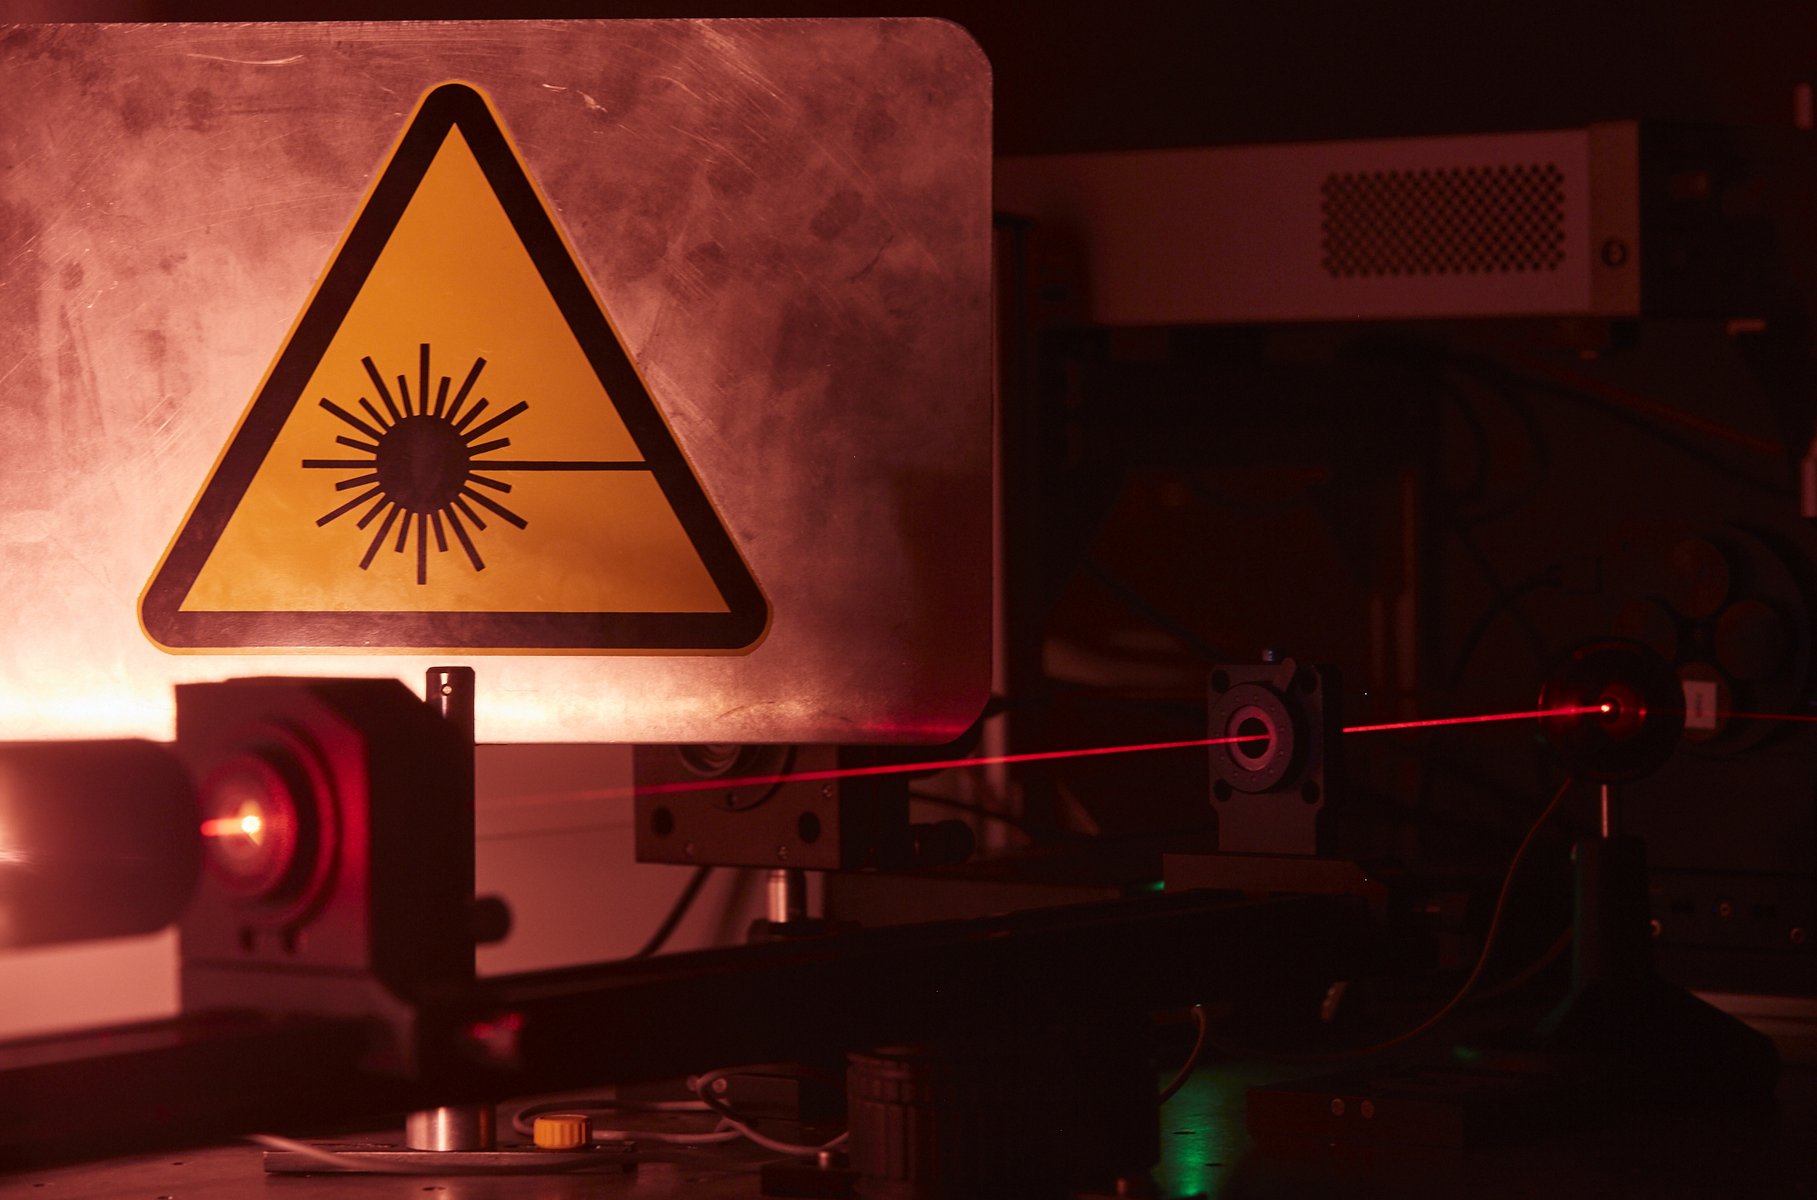 Das Bild zeigt ein Detail eines Aufbaus im abgedunkelten Laserlabor. Es ist gut der rote Laserstrahl zu erkennen. Im Hintergrund hängt groß das dreieckige gelbe Schild, das vor dem Laserlicht warnt.